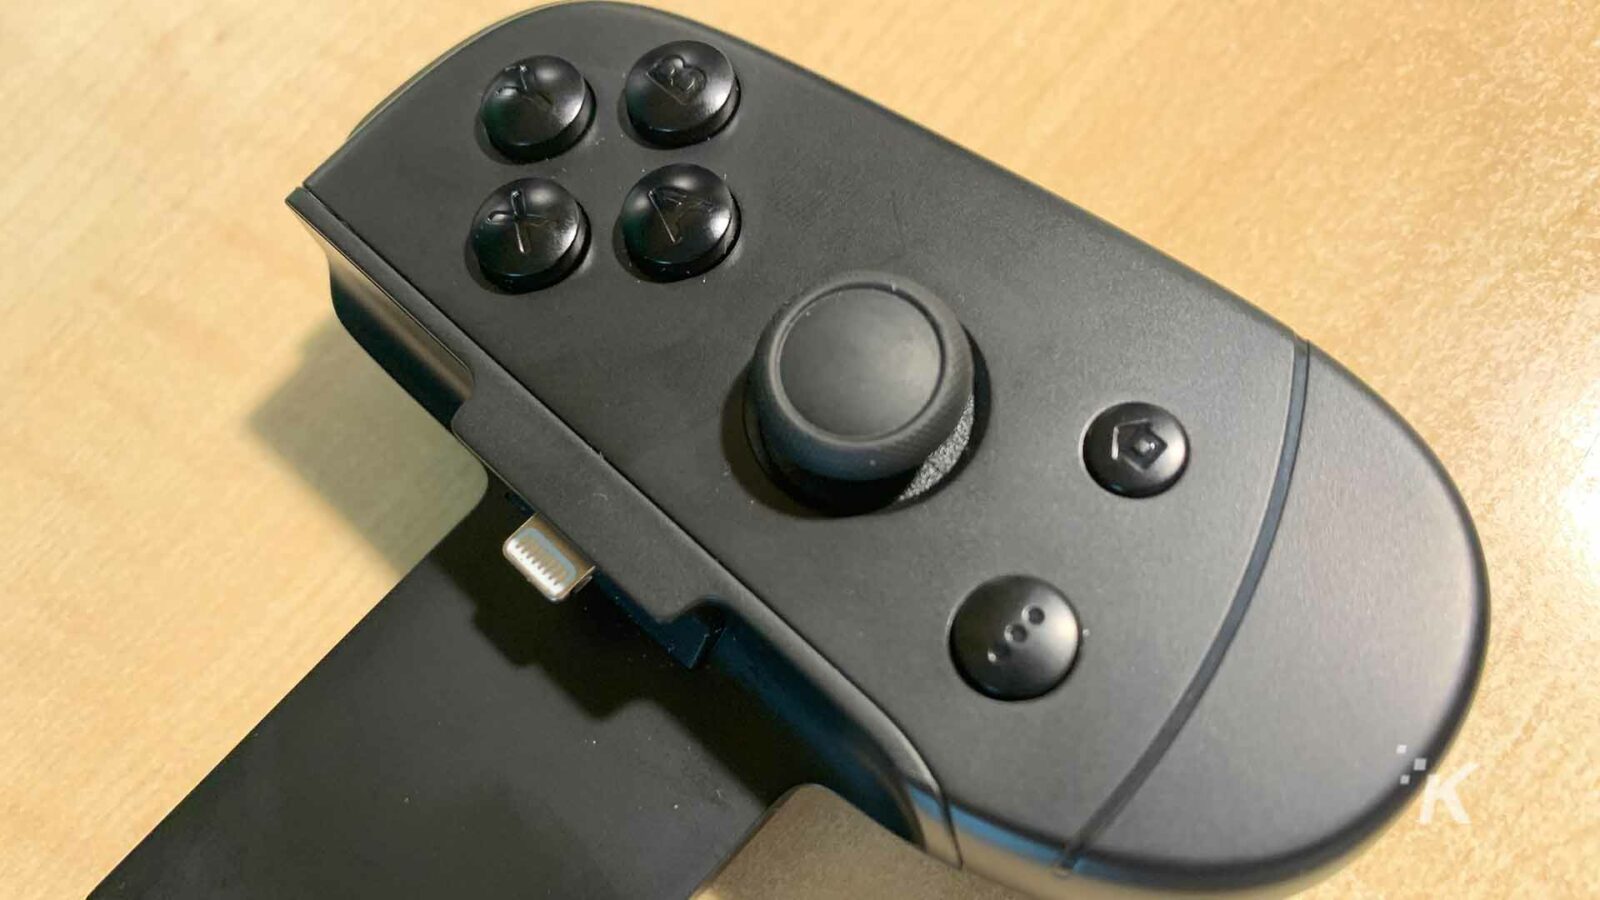 Le contrôleur de jeu vidéo noir est utilisé.